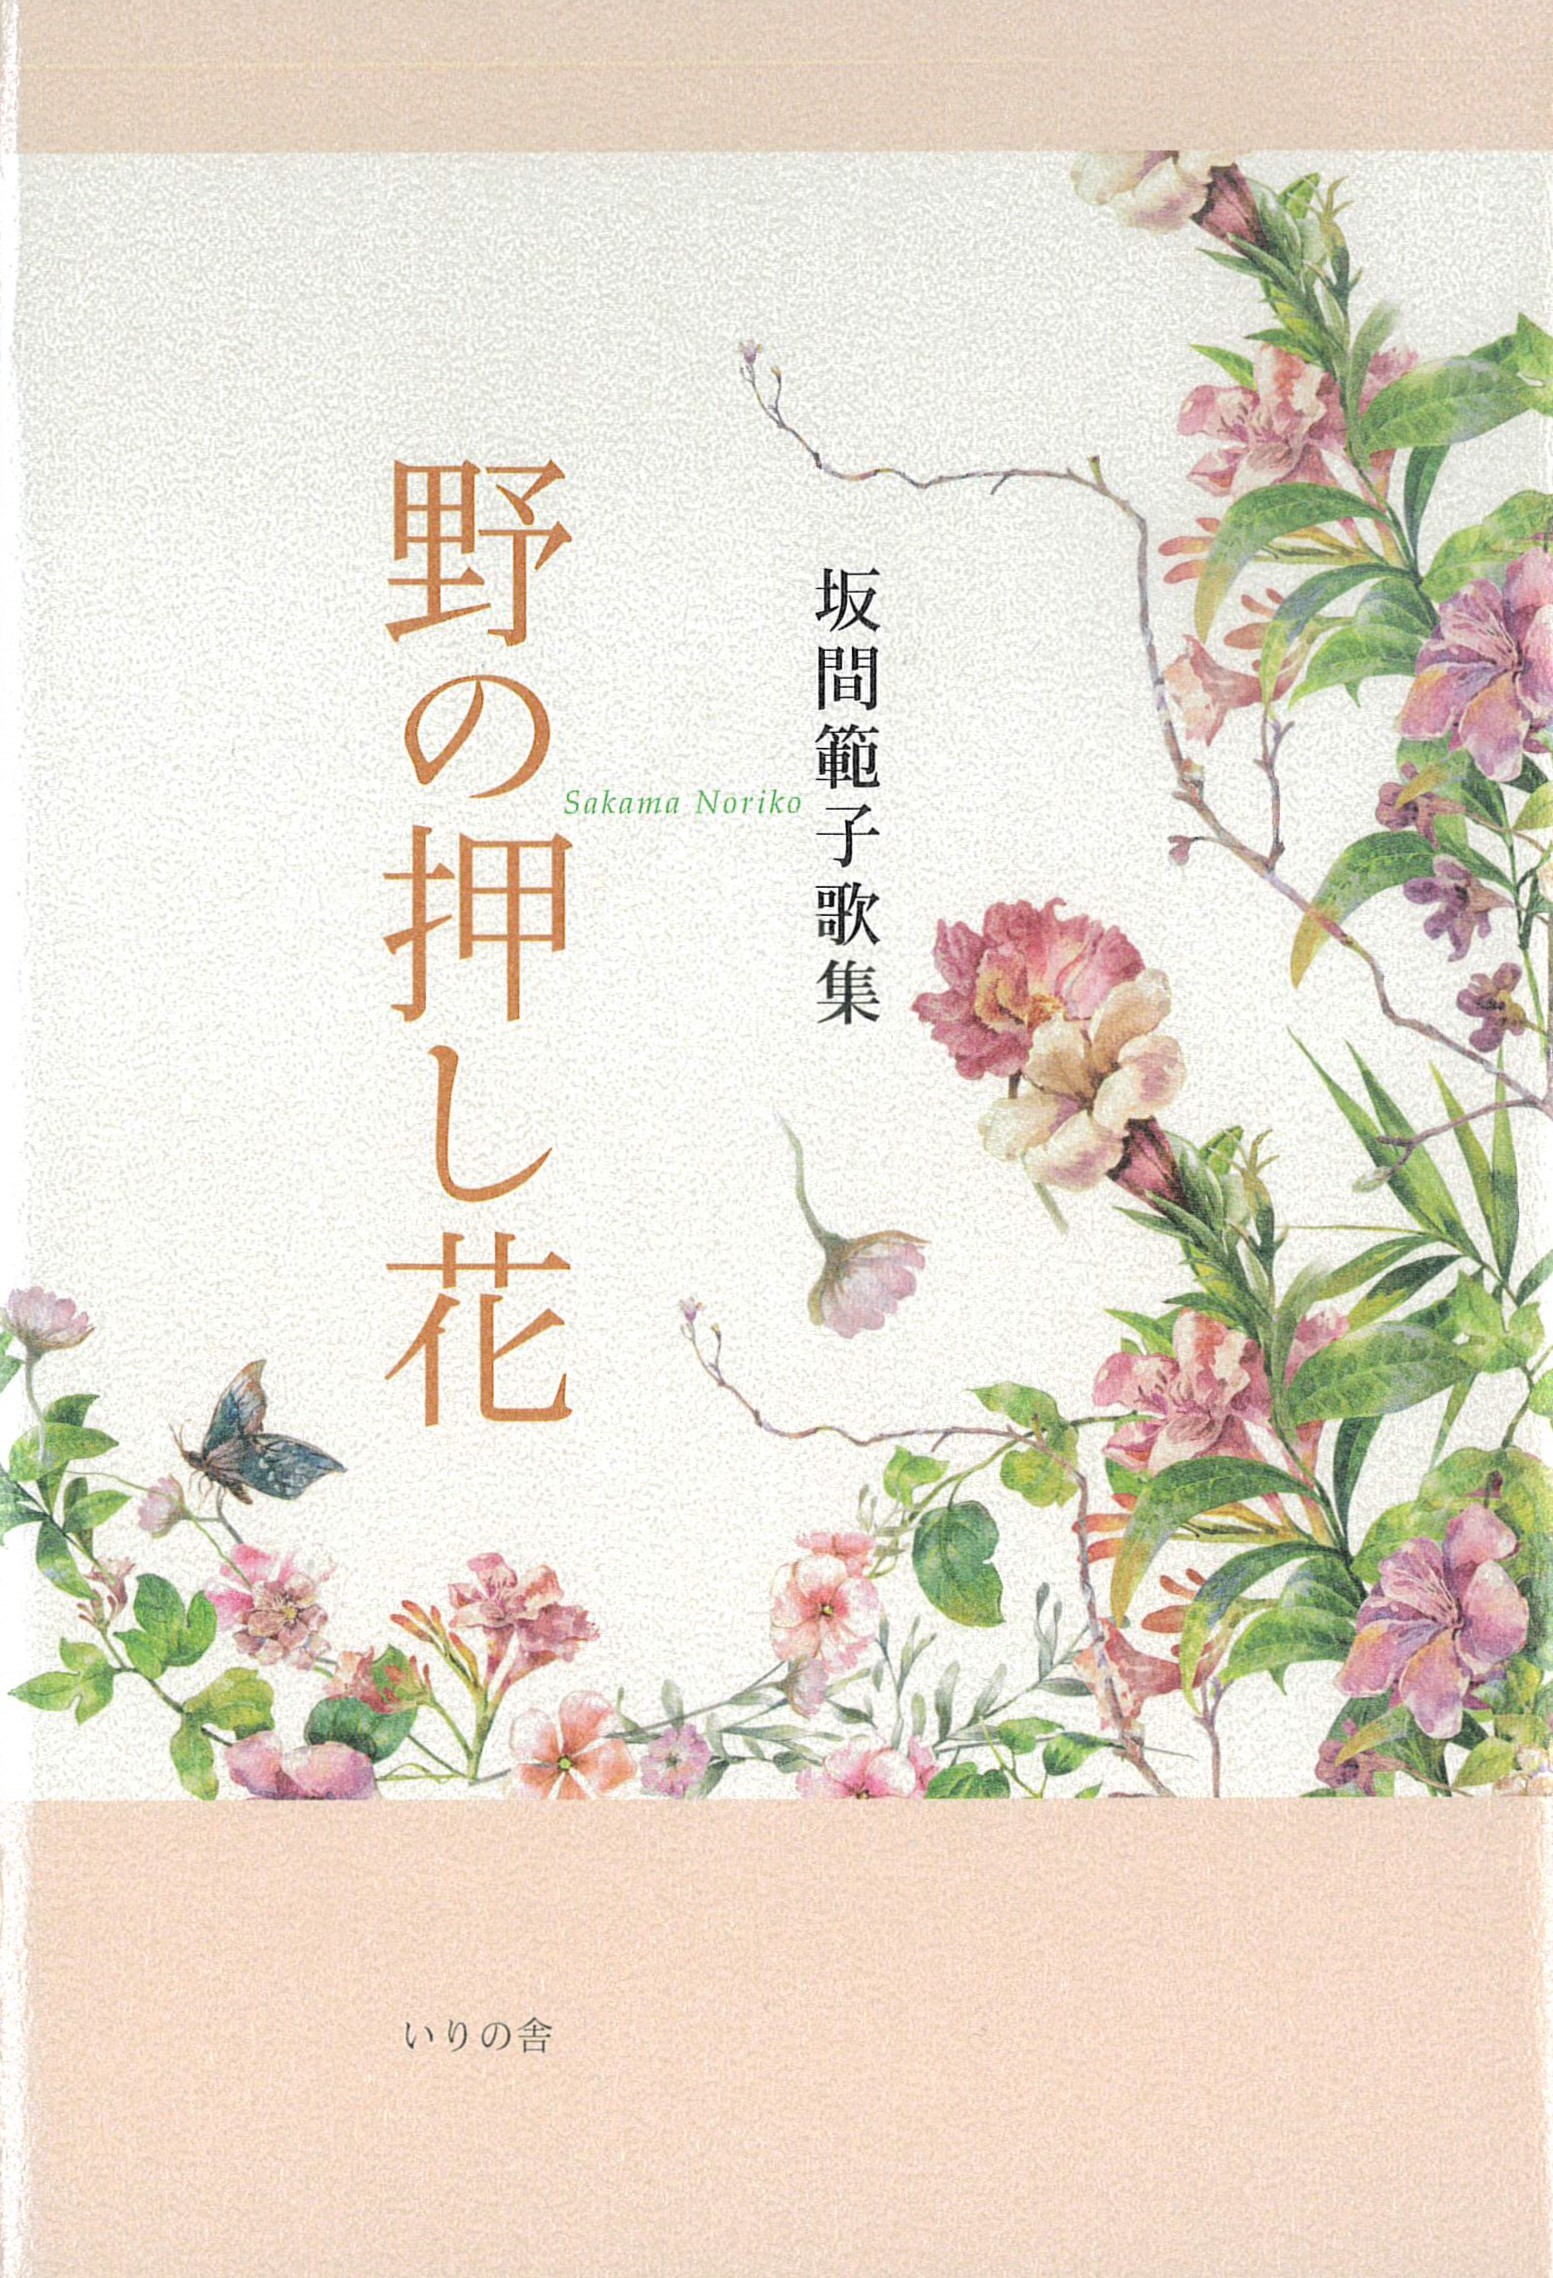 坂間範子歌集『野の押し花』